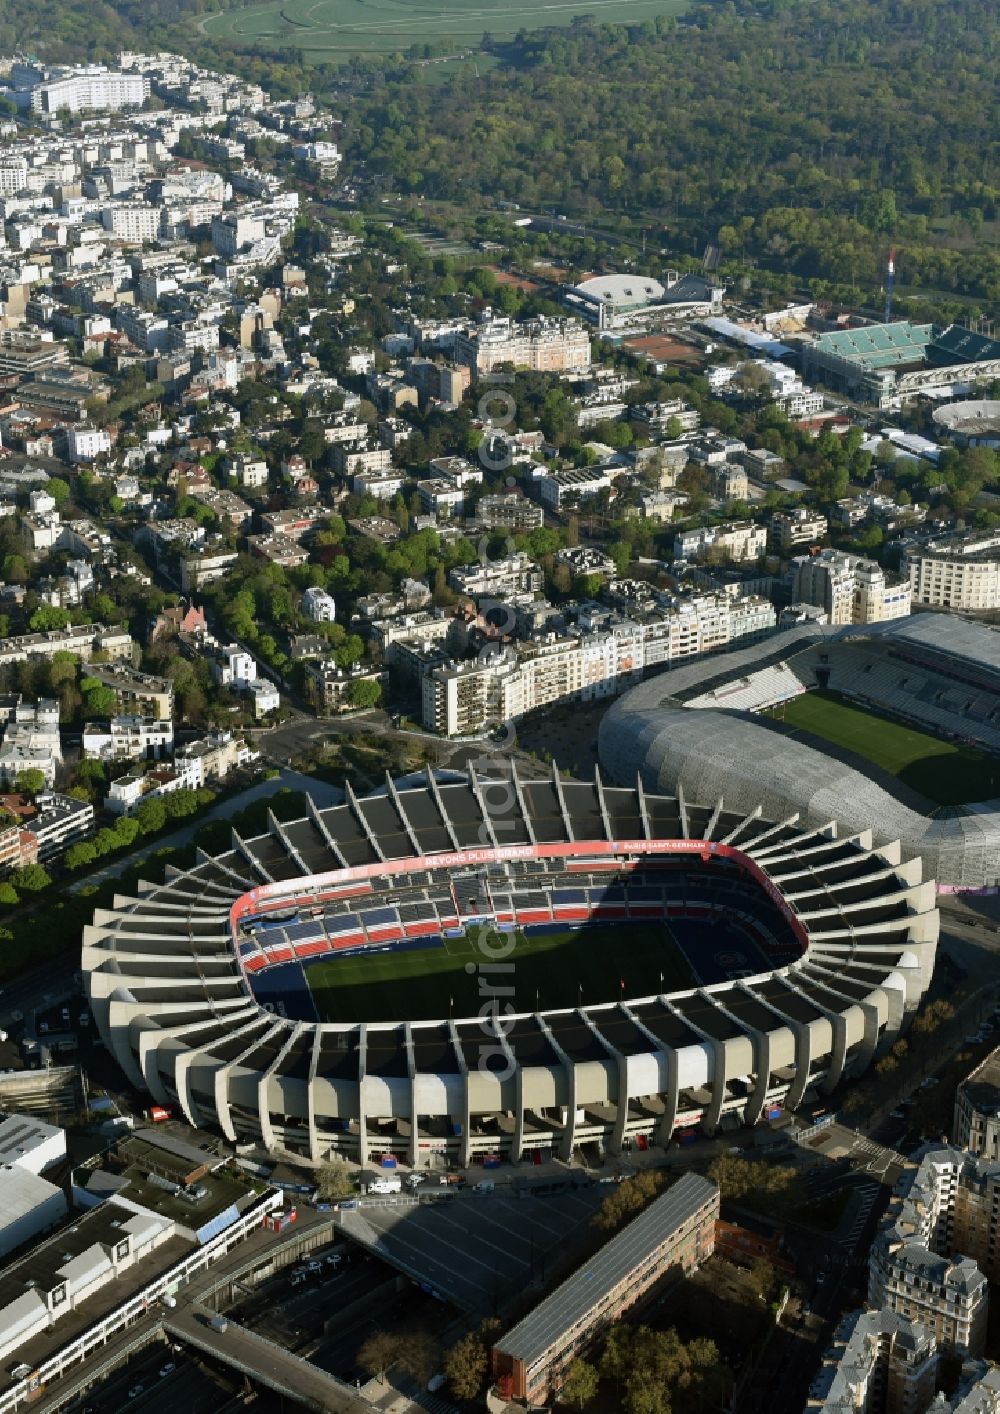 Aerial image Paris - Sports facility grounds of the arena of the stadium Parc des Princes on Rue du Commandant Guilbaud in Paris Boulogne-Billancourt, Ile-de-France, France